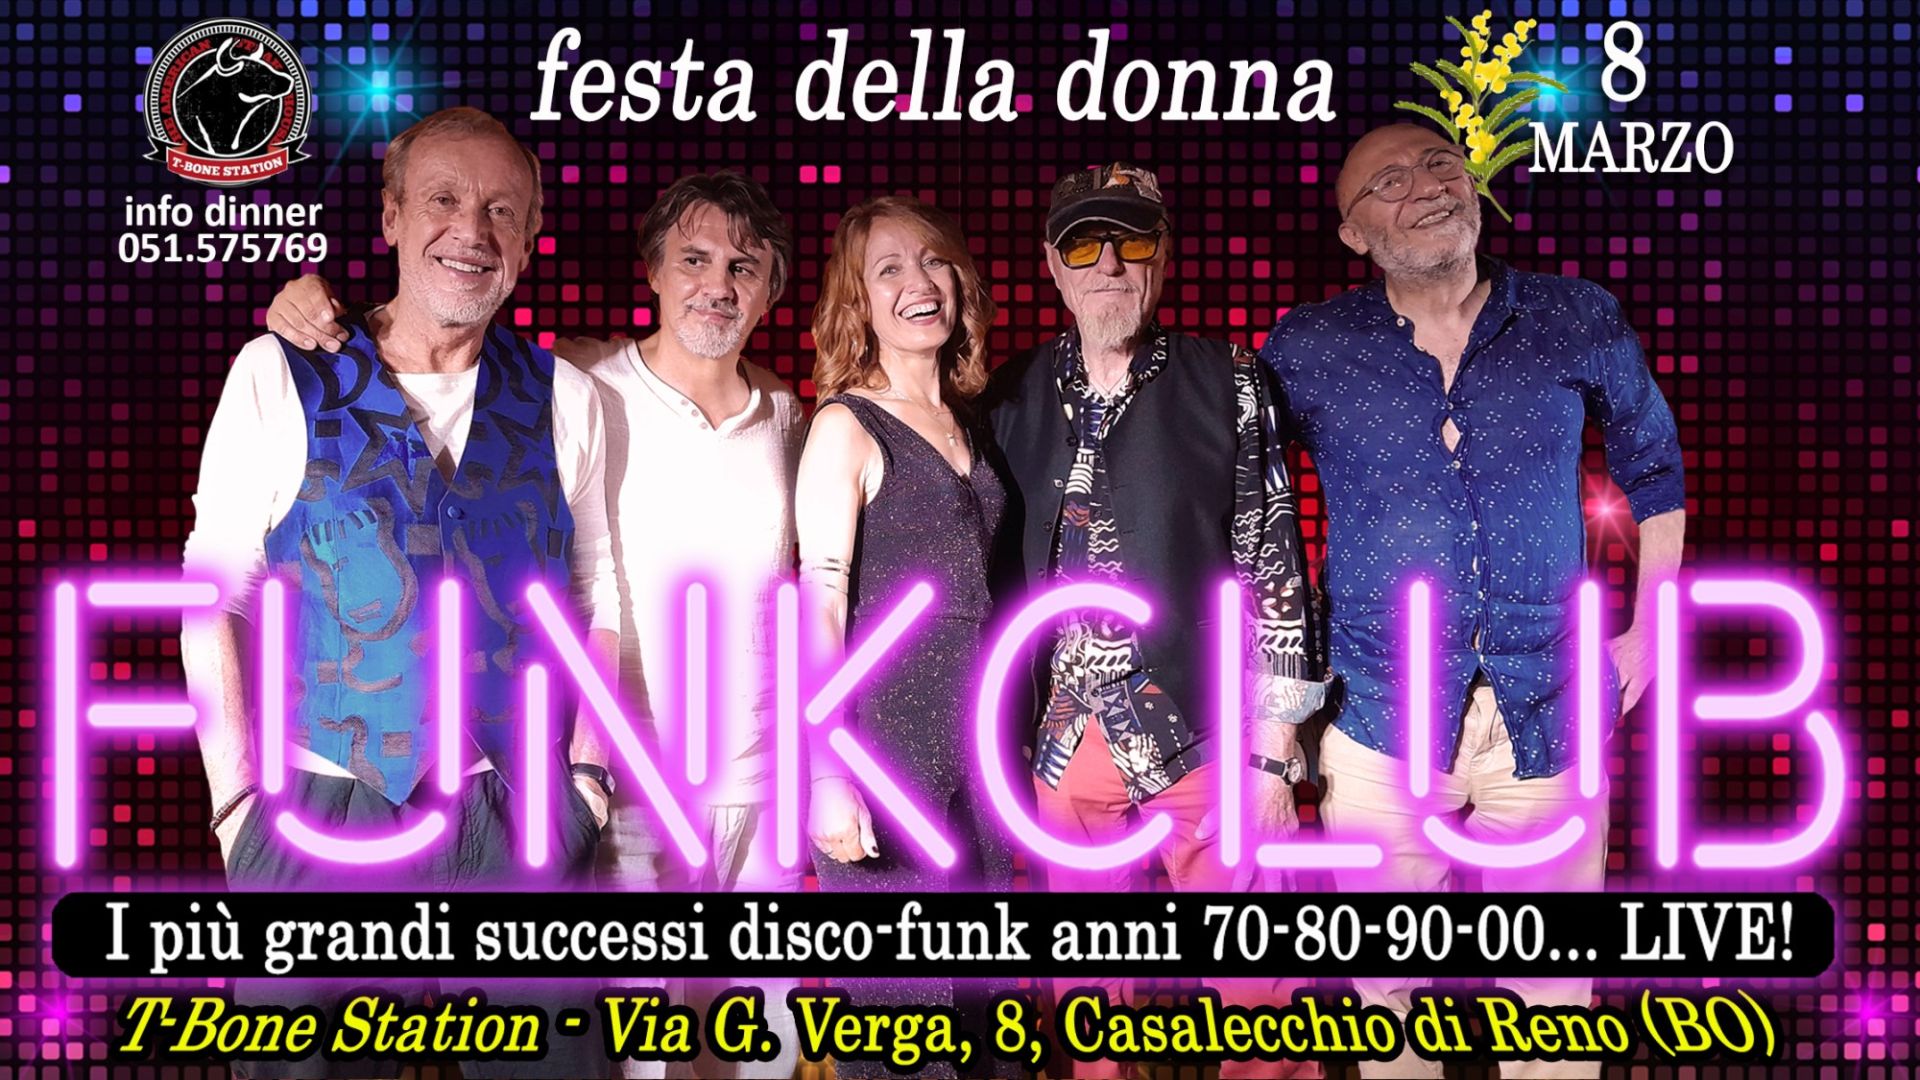 FunkClub LIVE - 8 Marzo Festa Della Donna